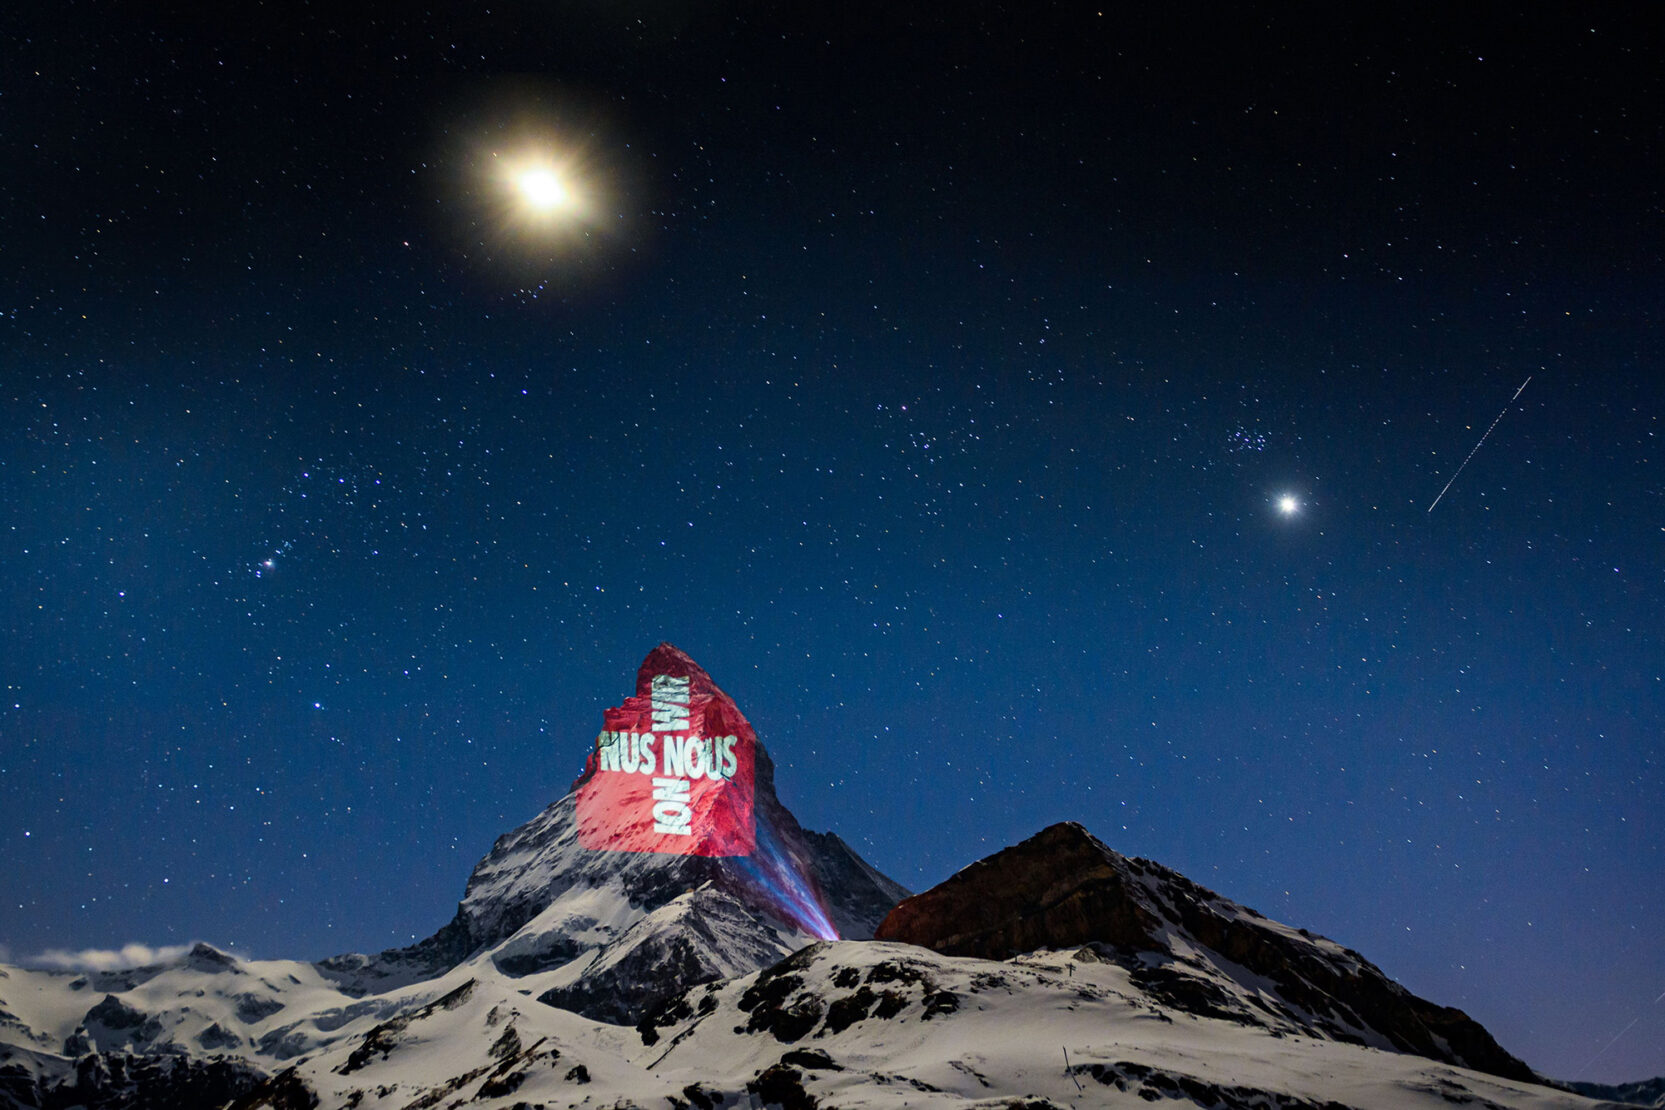 Light art on Matterhorn sends signs of hope